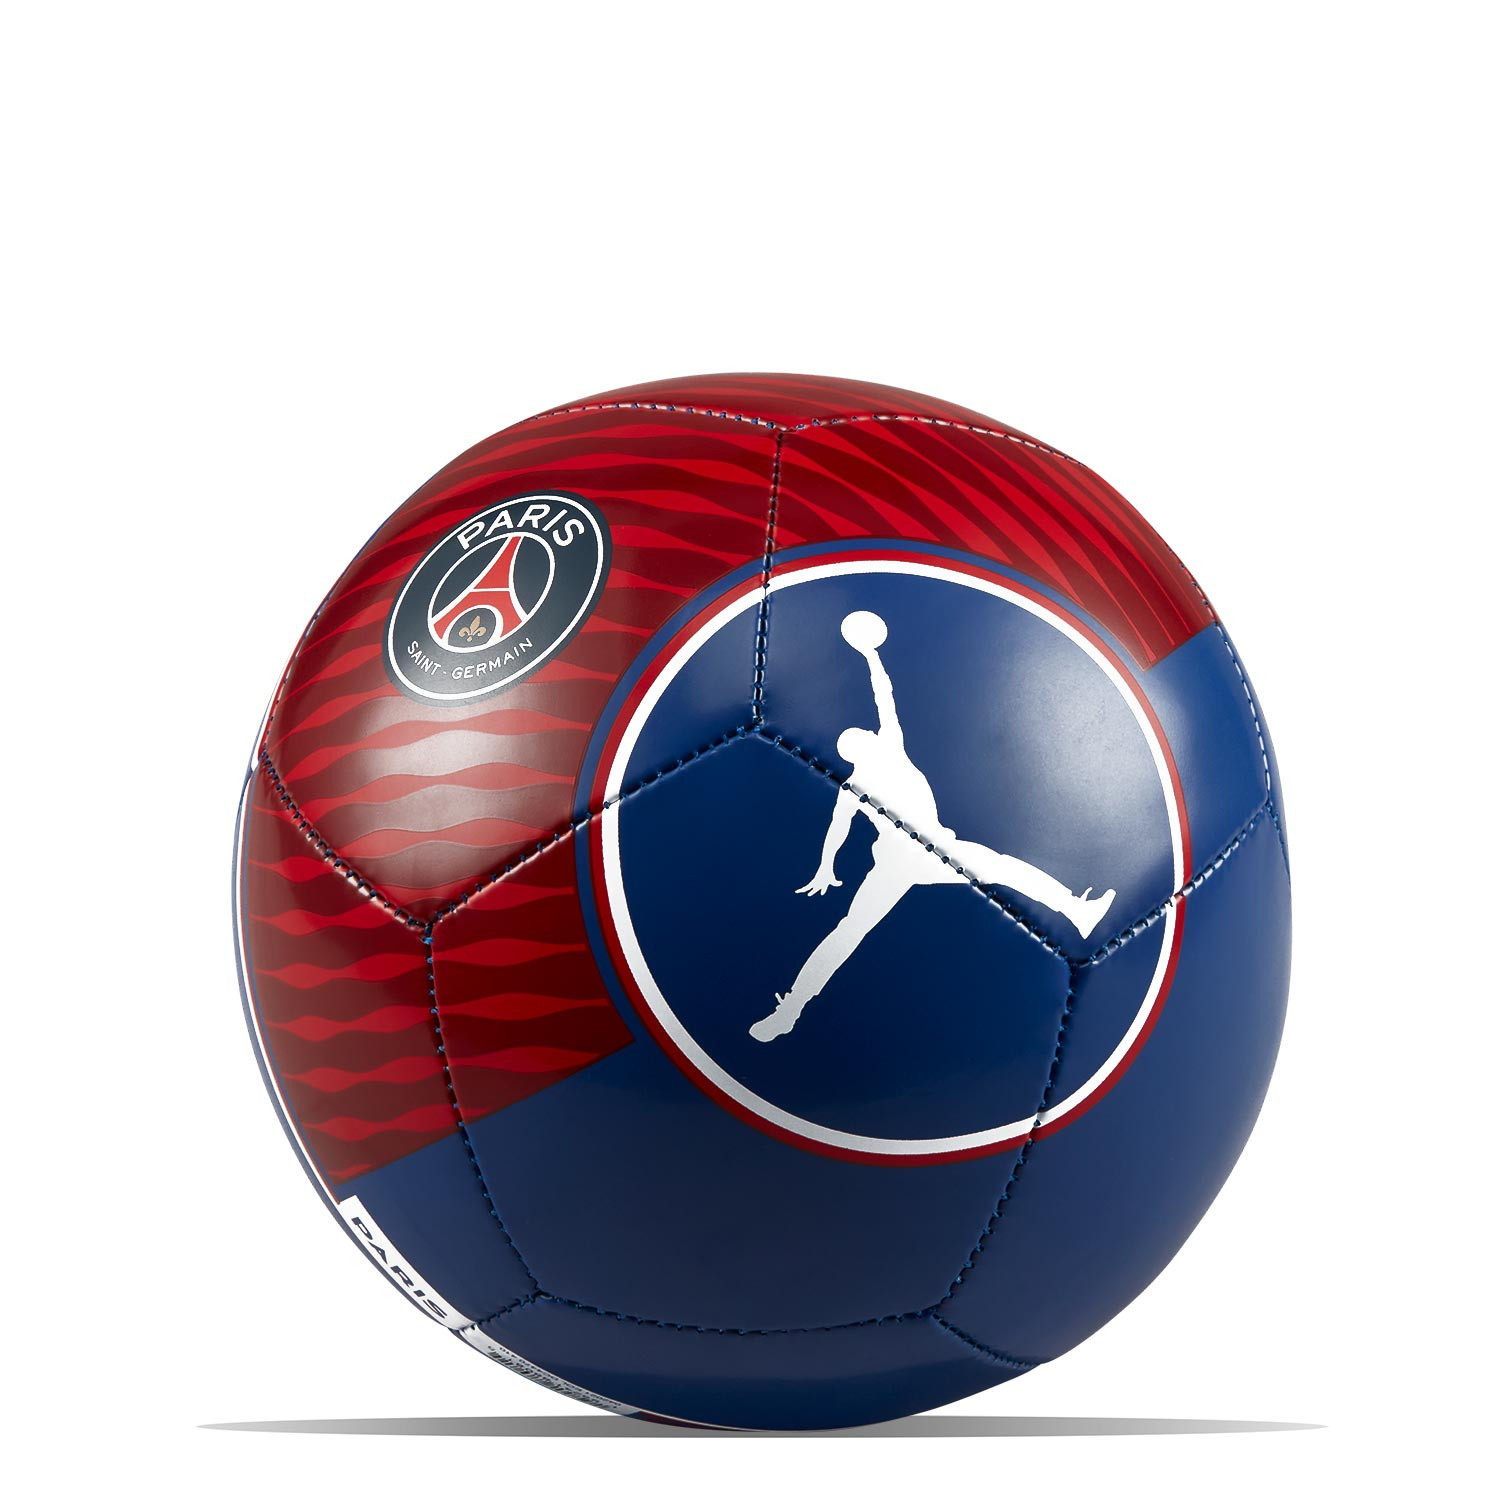 Balón Nike PSG x Jordan Skills talla mini azul rojo |